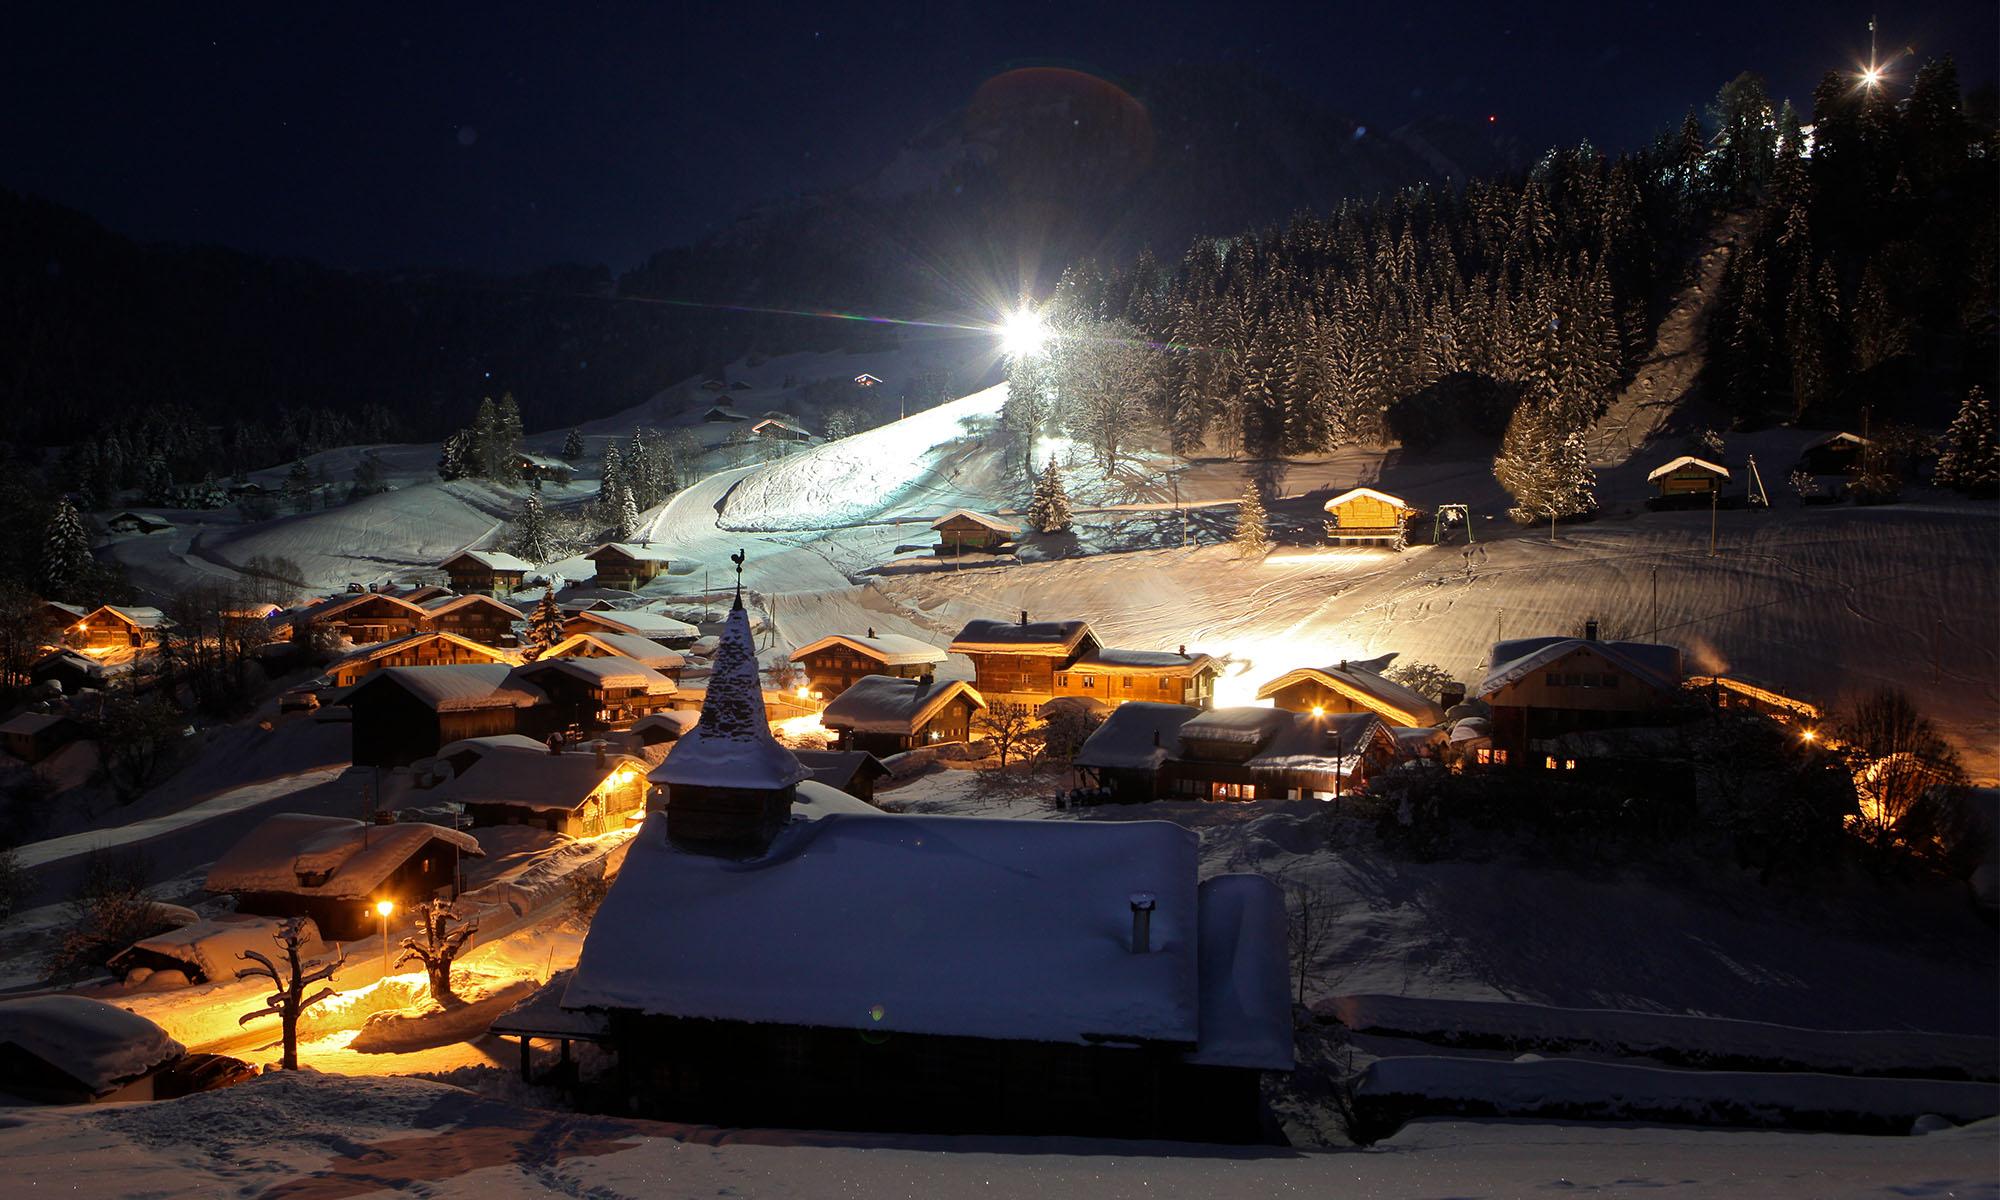 Dorf von La Forclaz bei Nacht - Winter